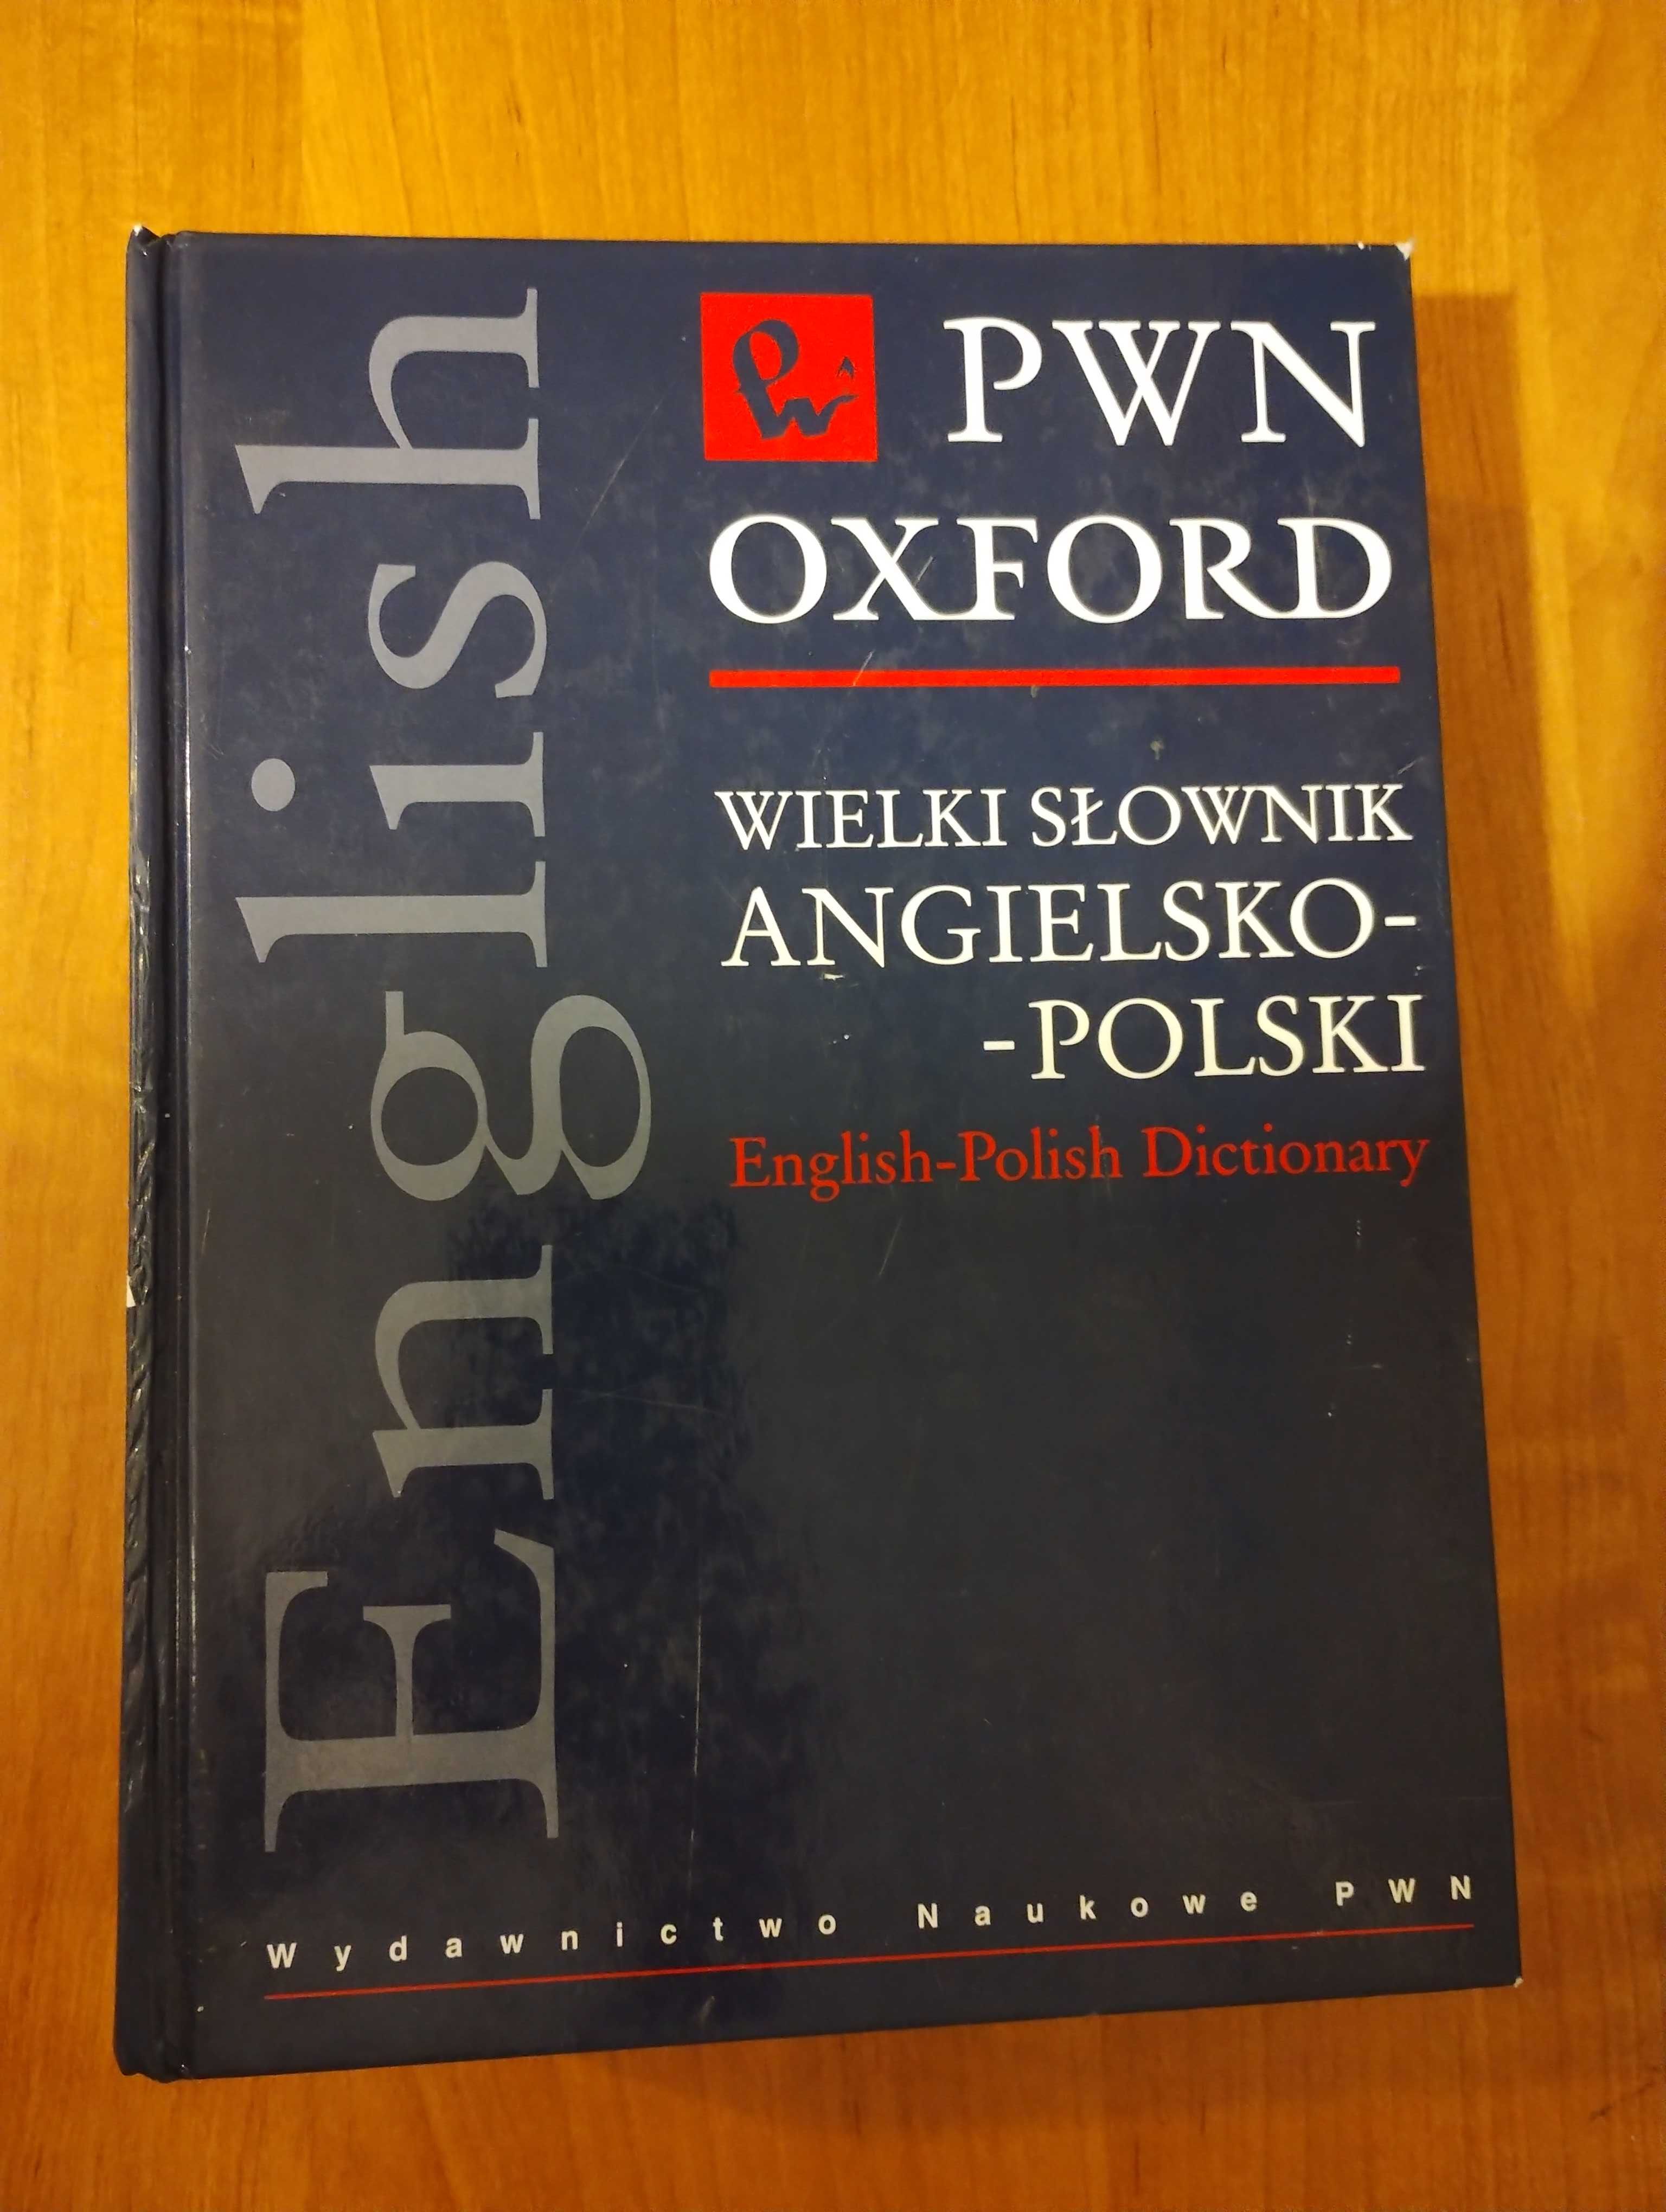 Wielki słownik angielsko-polski Oxford PWN